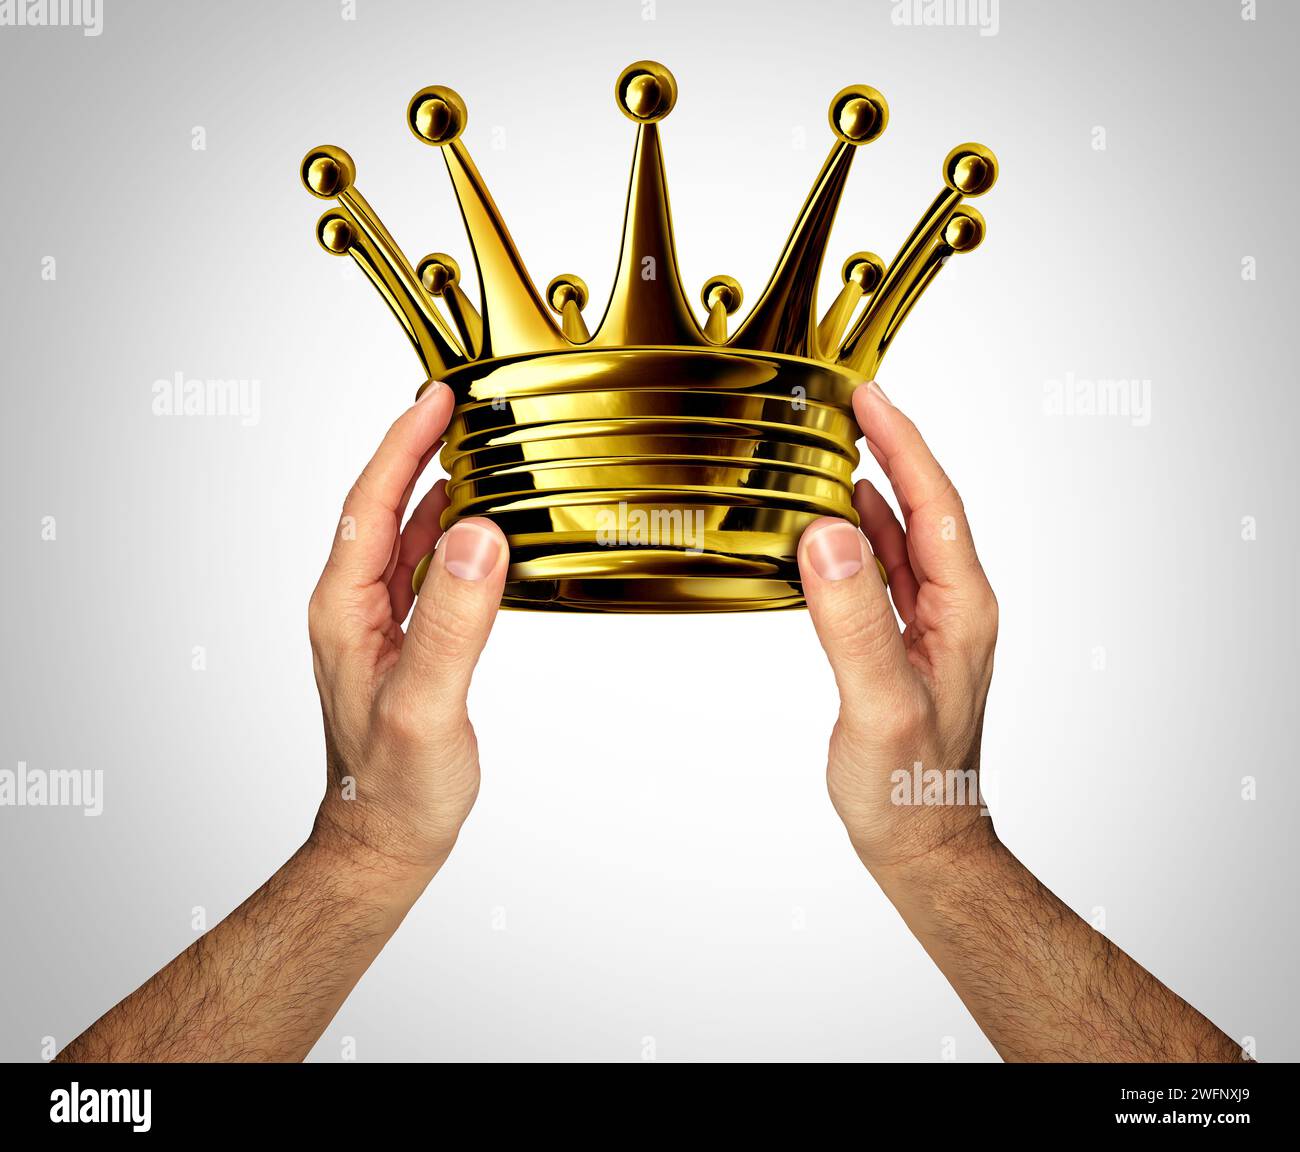 Incoronazione della Corona dell'Incoronazione come persona che conferisce o concede un copricapo d'oro o d'oro come onore che rappresenta la regalità e la ricchezza come premio monarchico Foto Stock